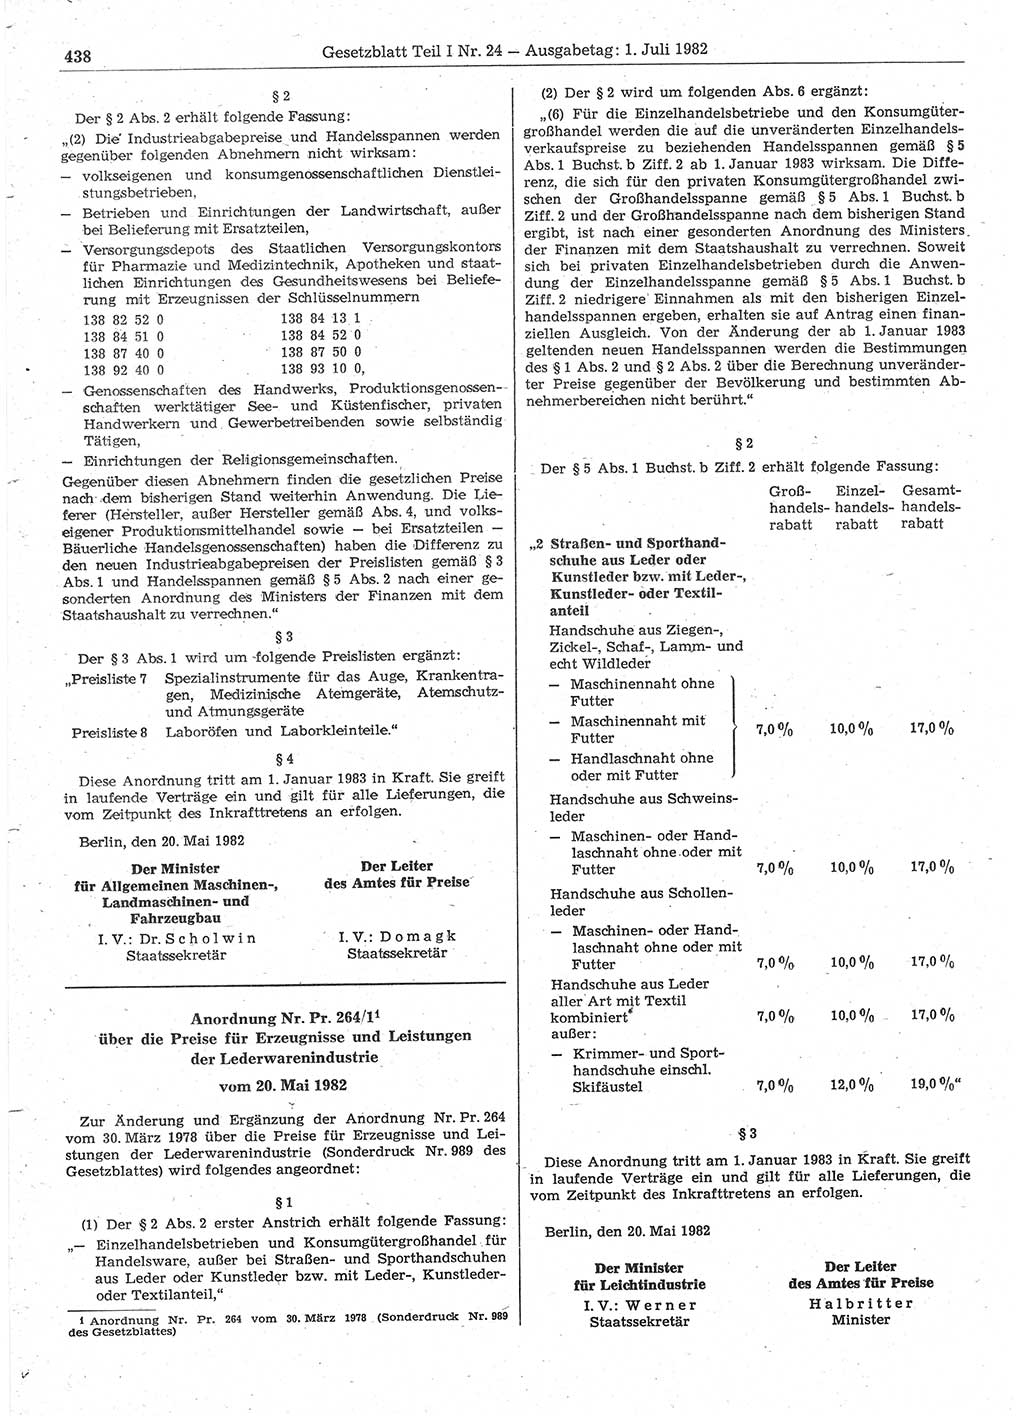 Gesetzblatt (GBl.) der Deutschen Demokratischen Republik (DDR) Teil Ⅰ 1982, Seite 438 (GBl. DDR Ⅰ 1982, S. 438)